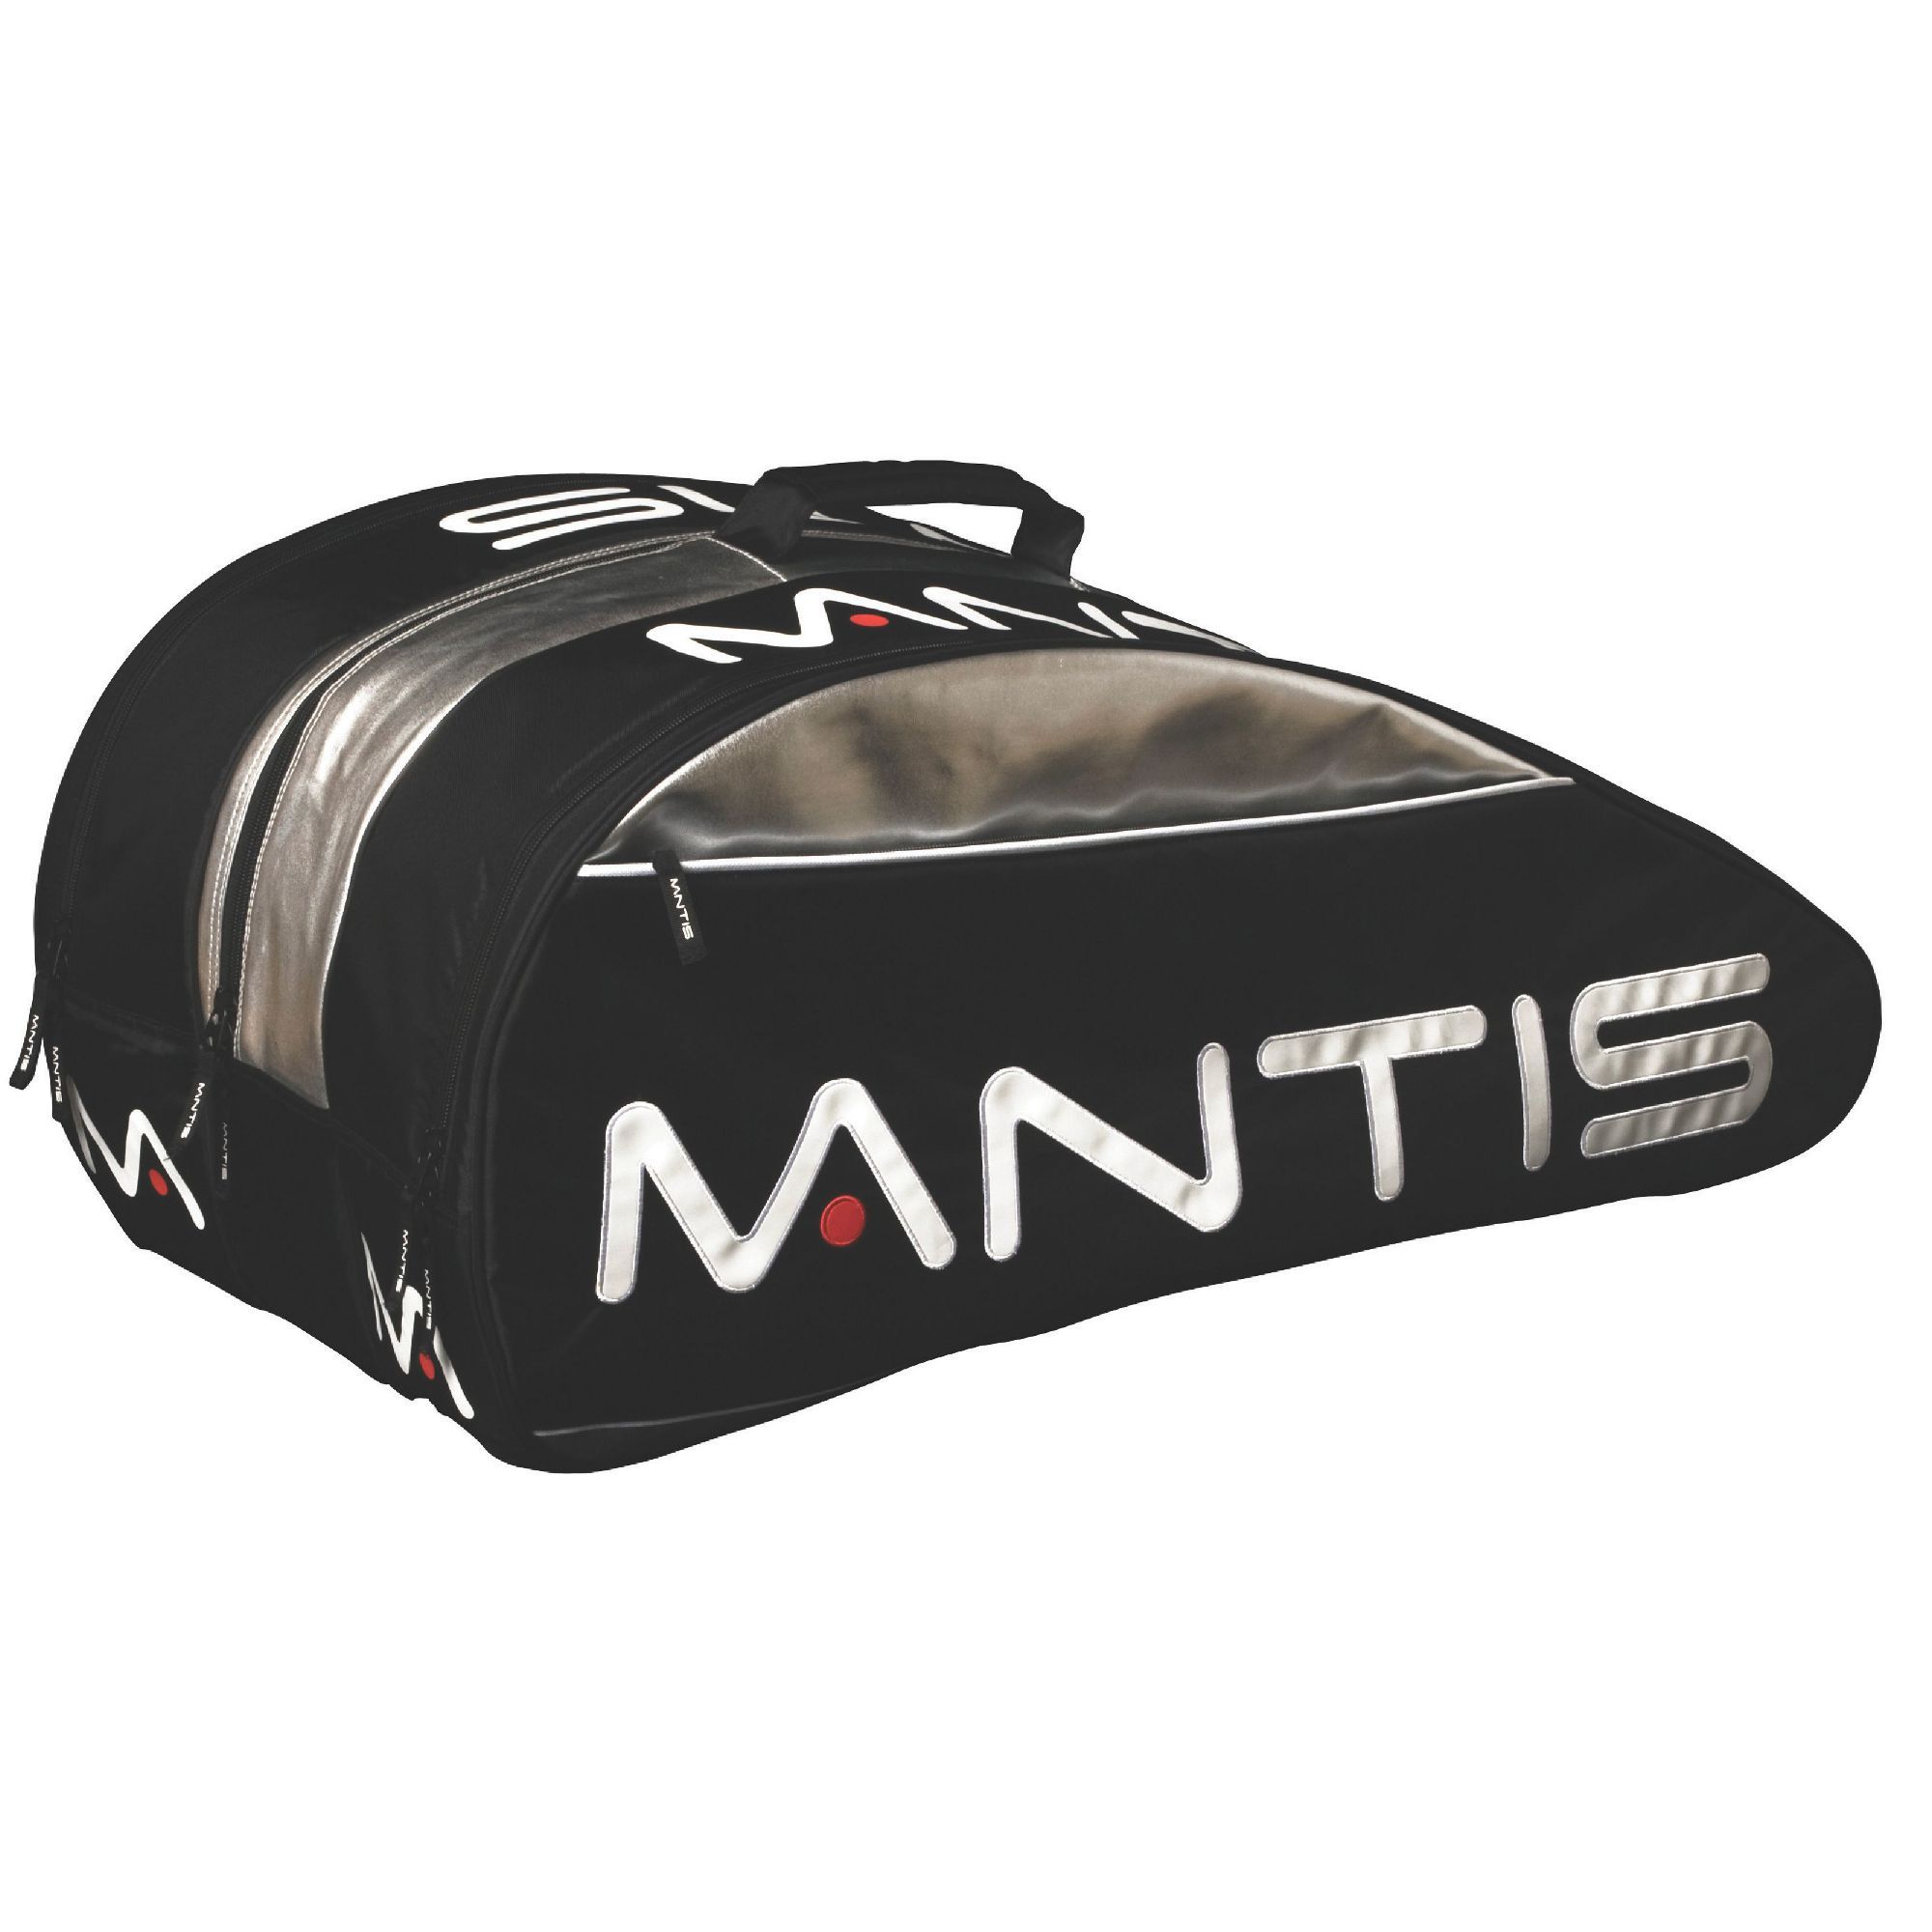 Mantis Thermo Bag 12 Racket 